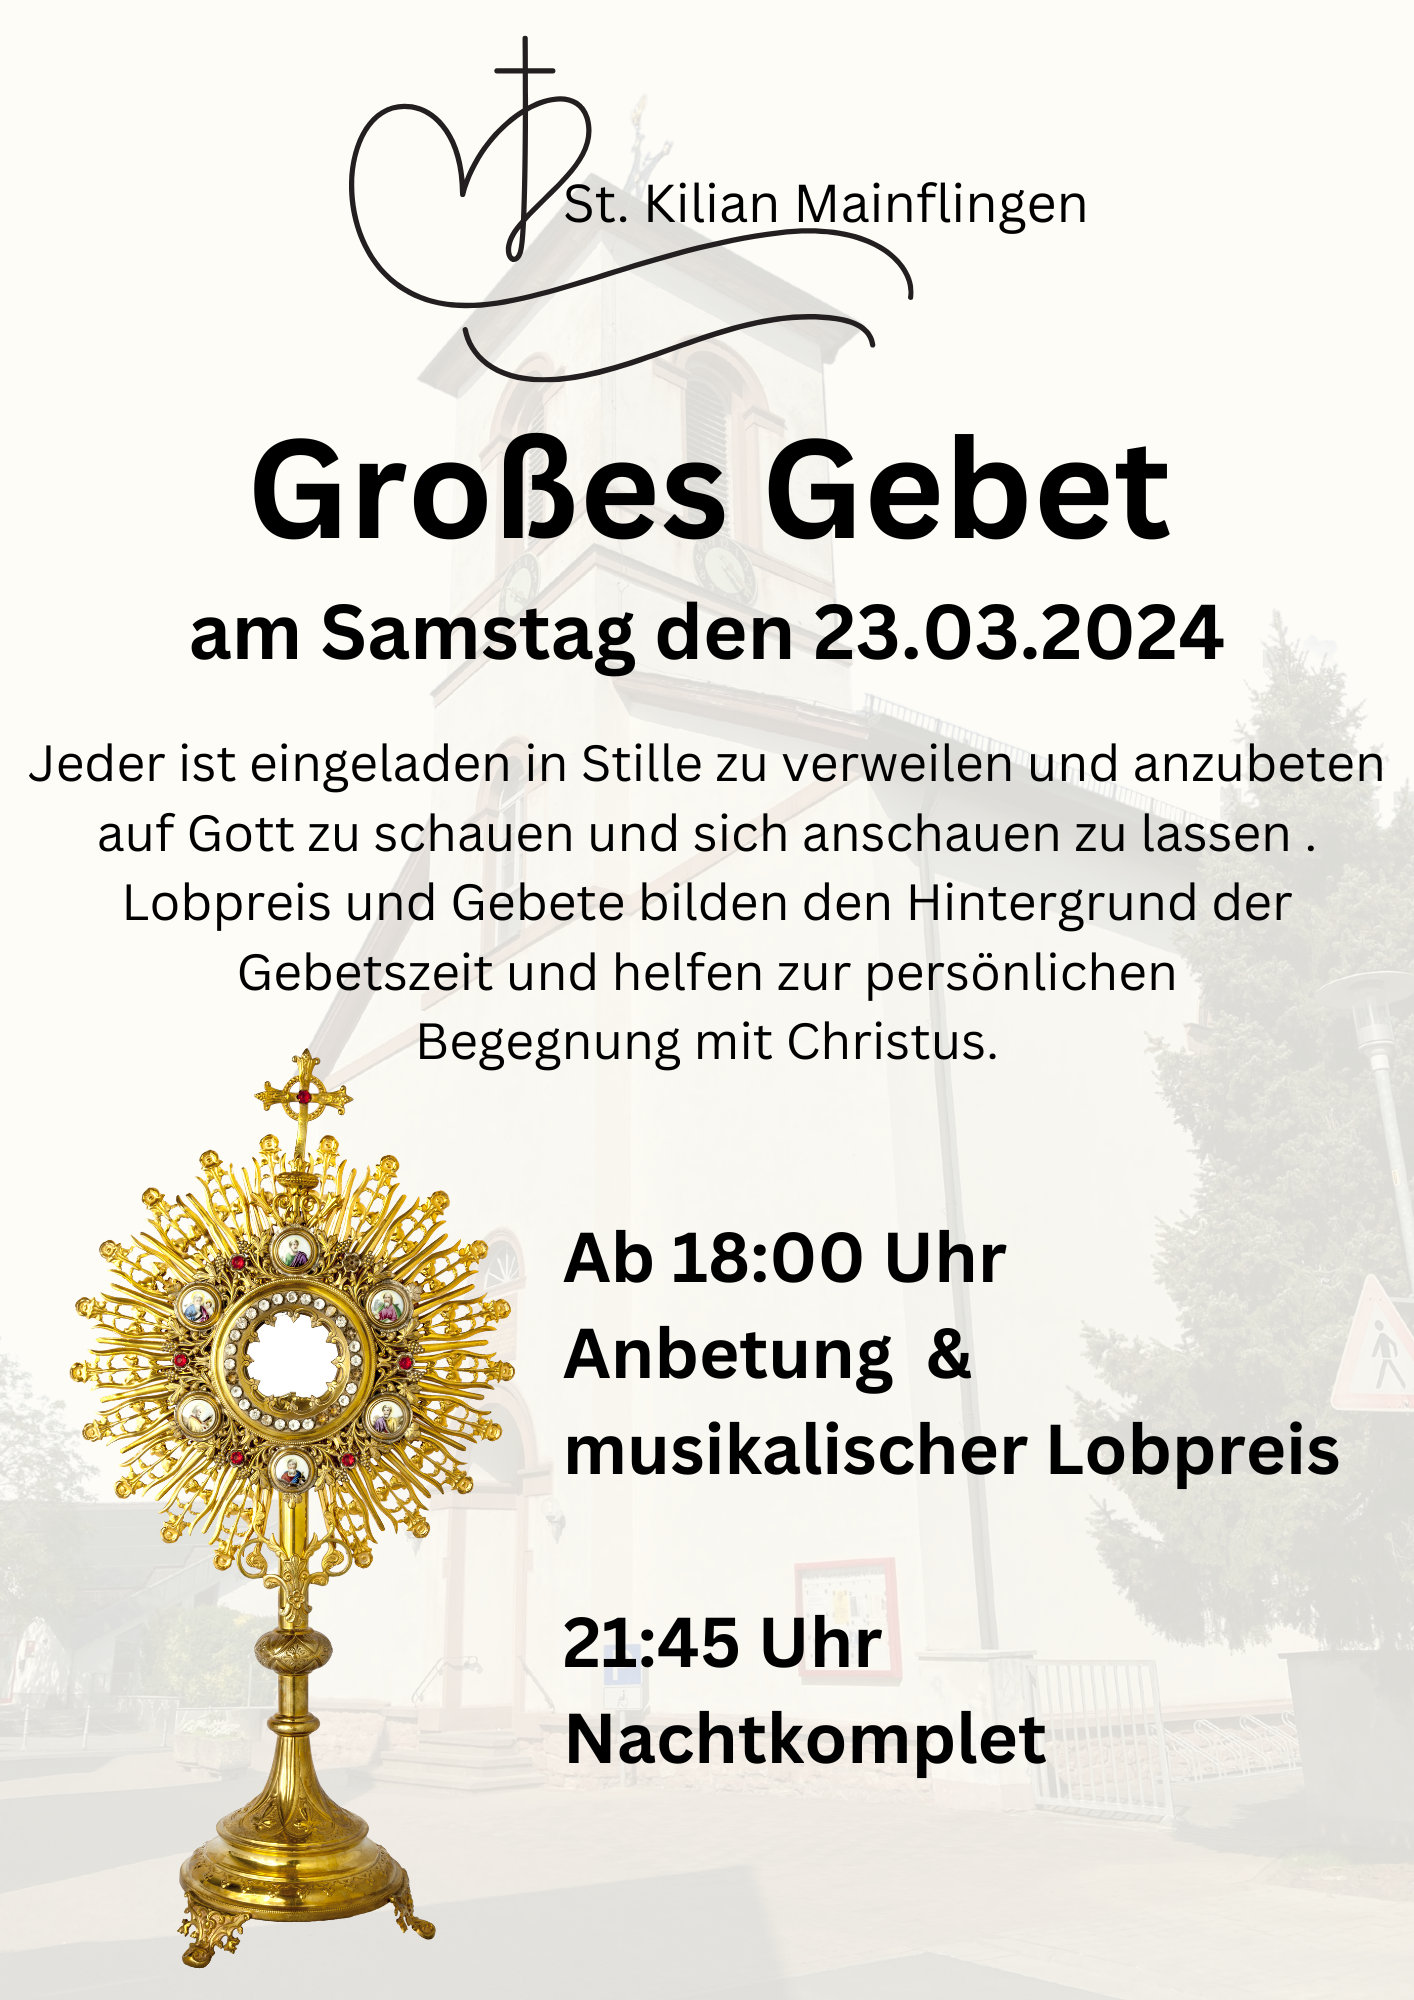 Großes Gebet St. Kilian Termine Osterzeit 2024 (1) (c) St. Kilian Mainflingen